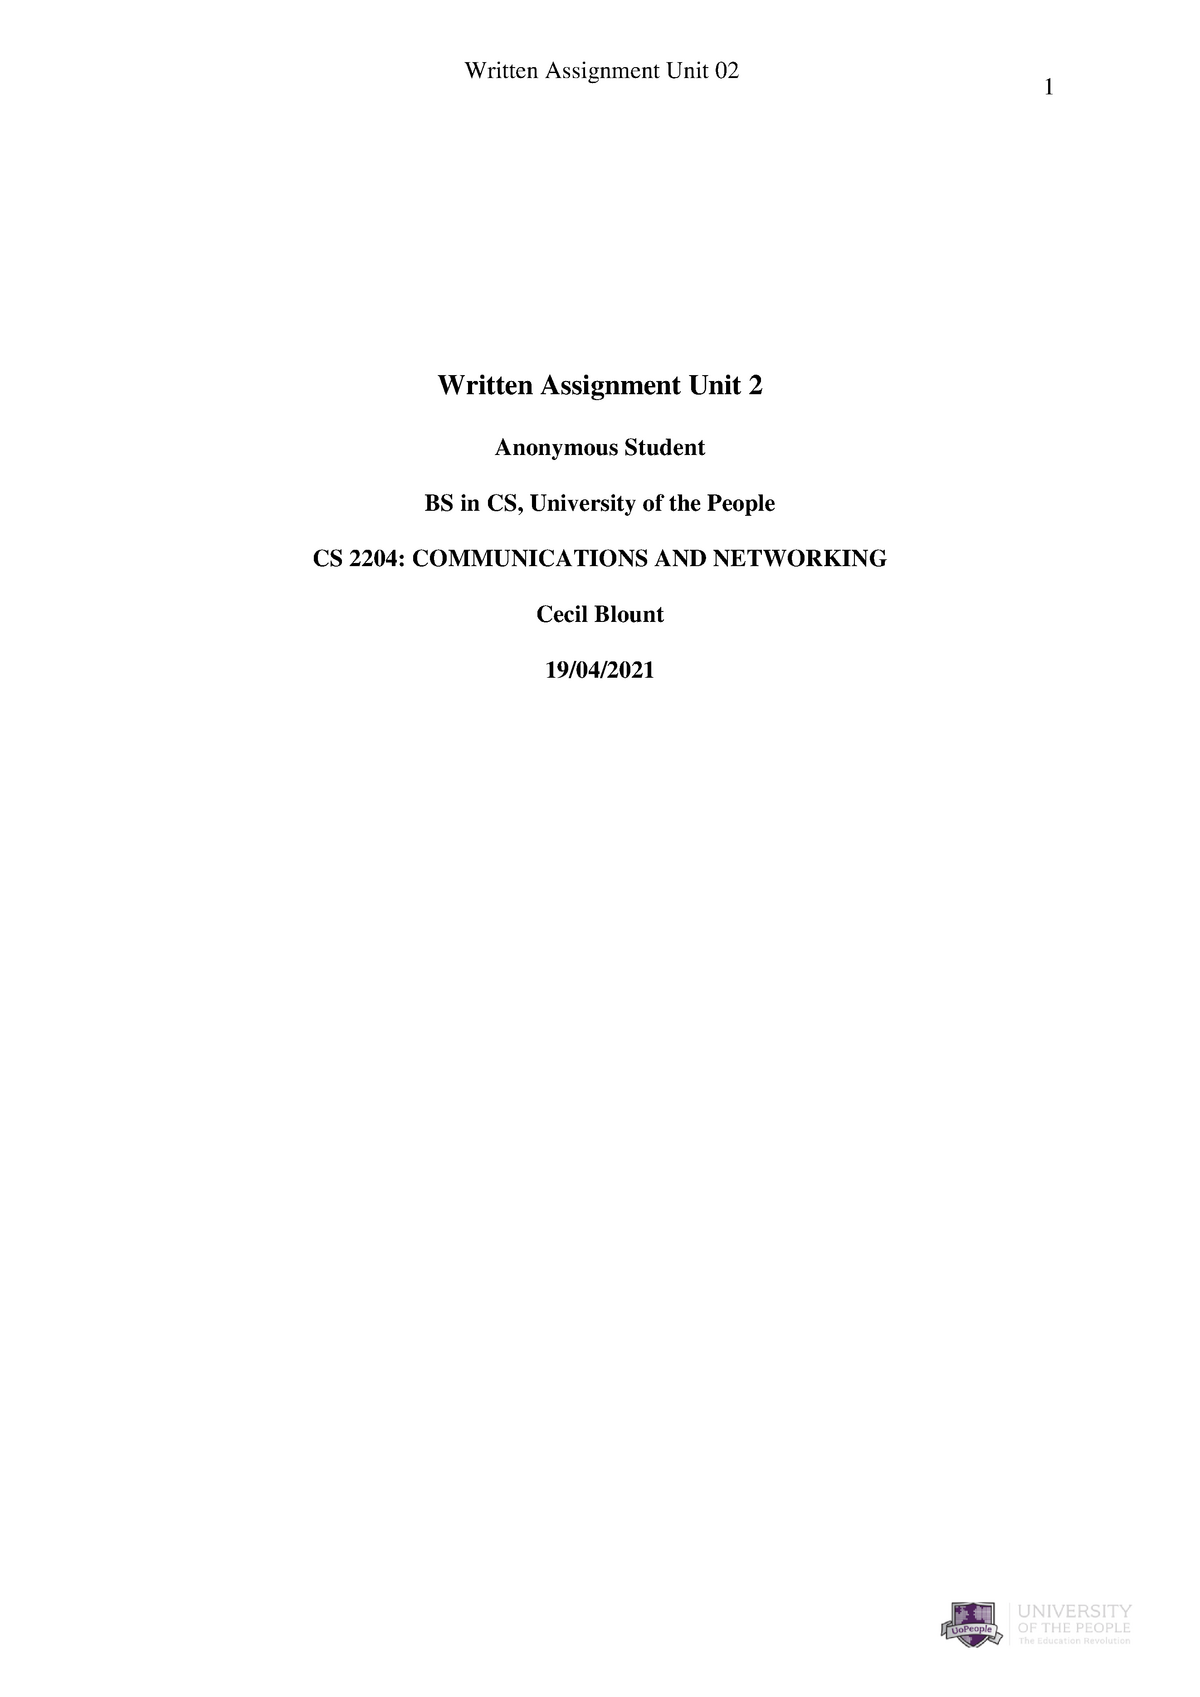 cs 2204 written assignment unit 2